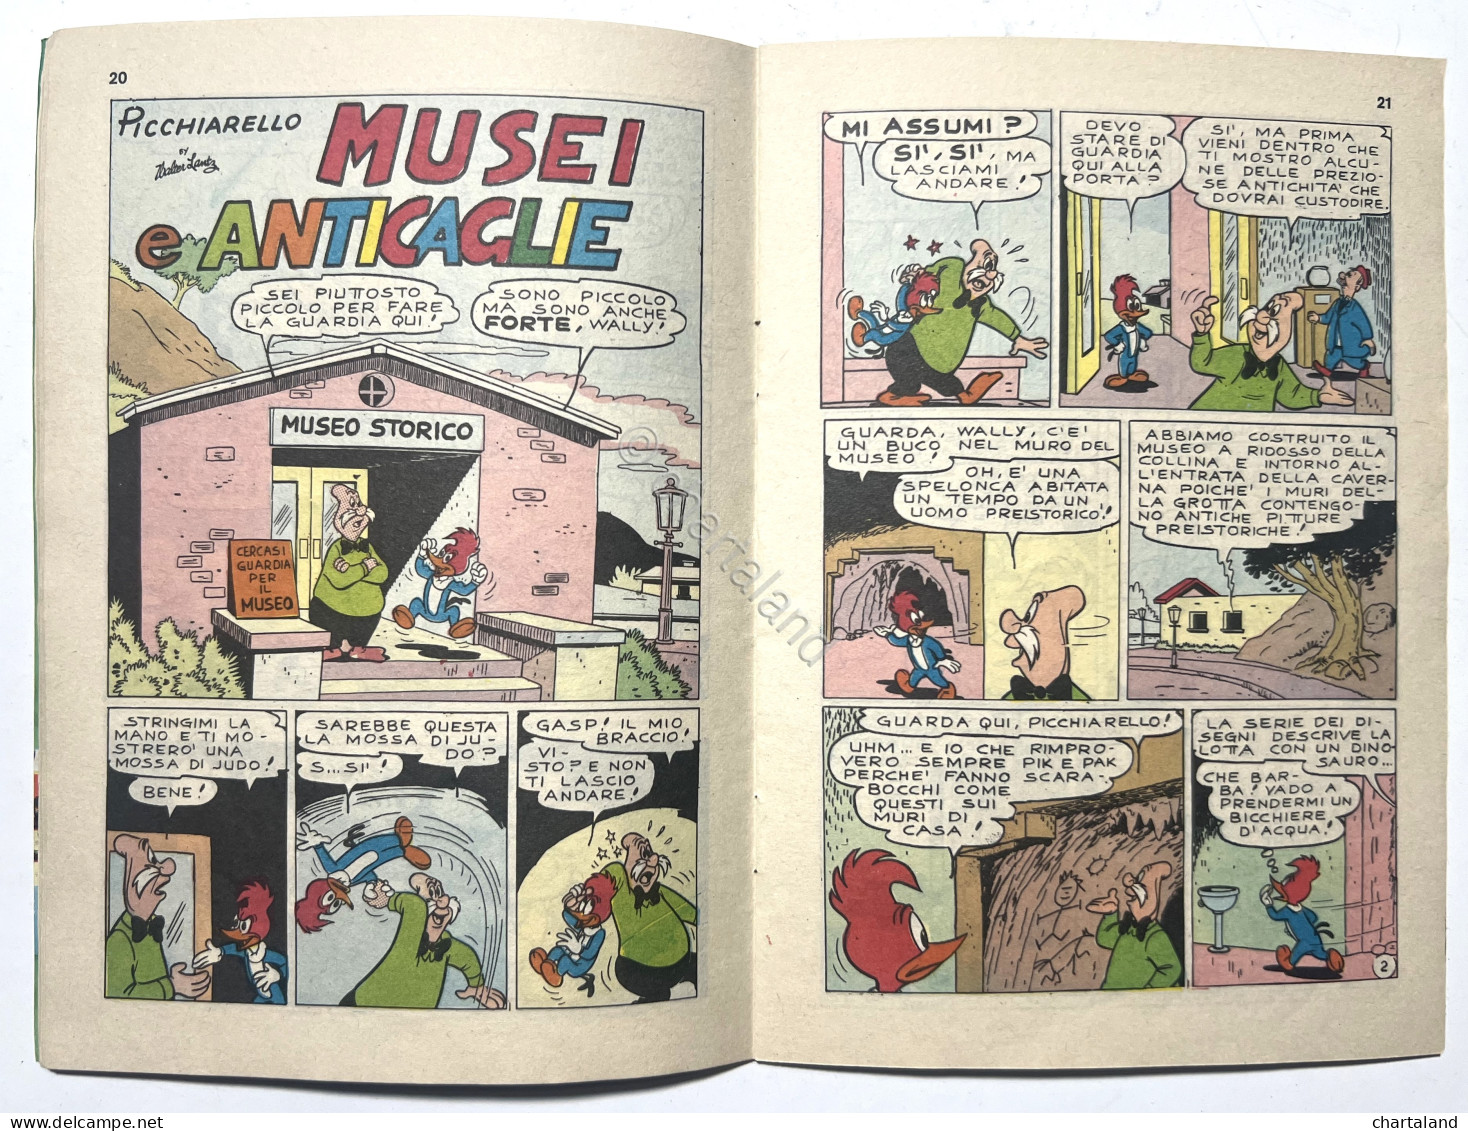 Fumetti - Walter Lantz - Picchiarello N. 4 - Aprile 1976 - Other & Unclassified